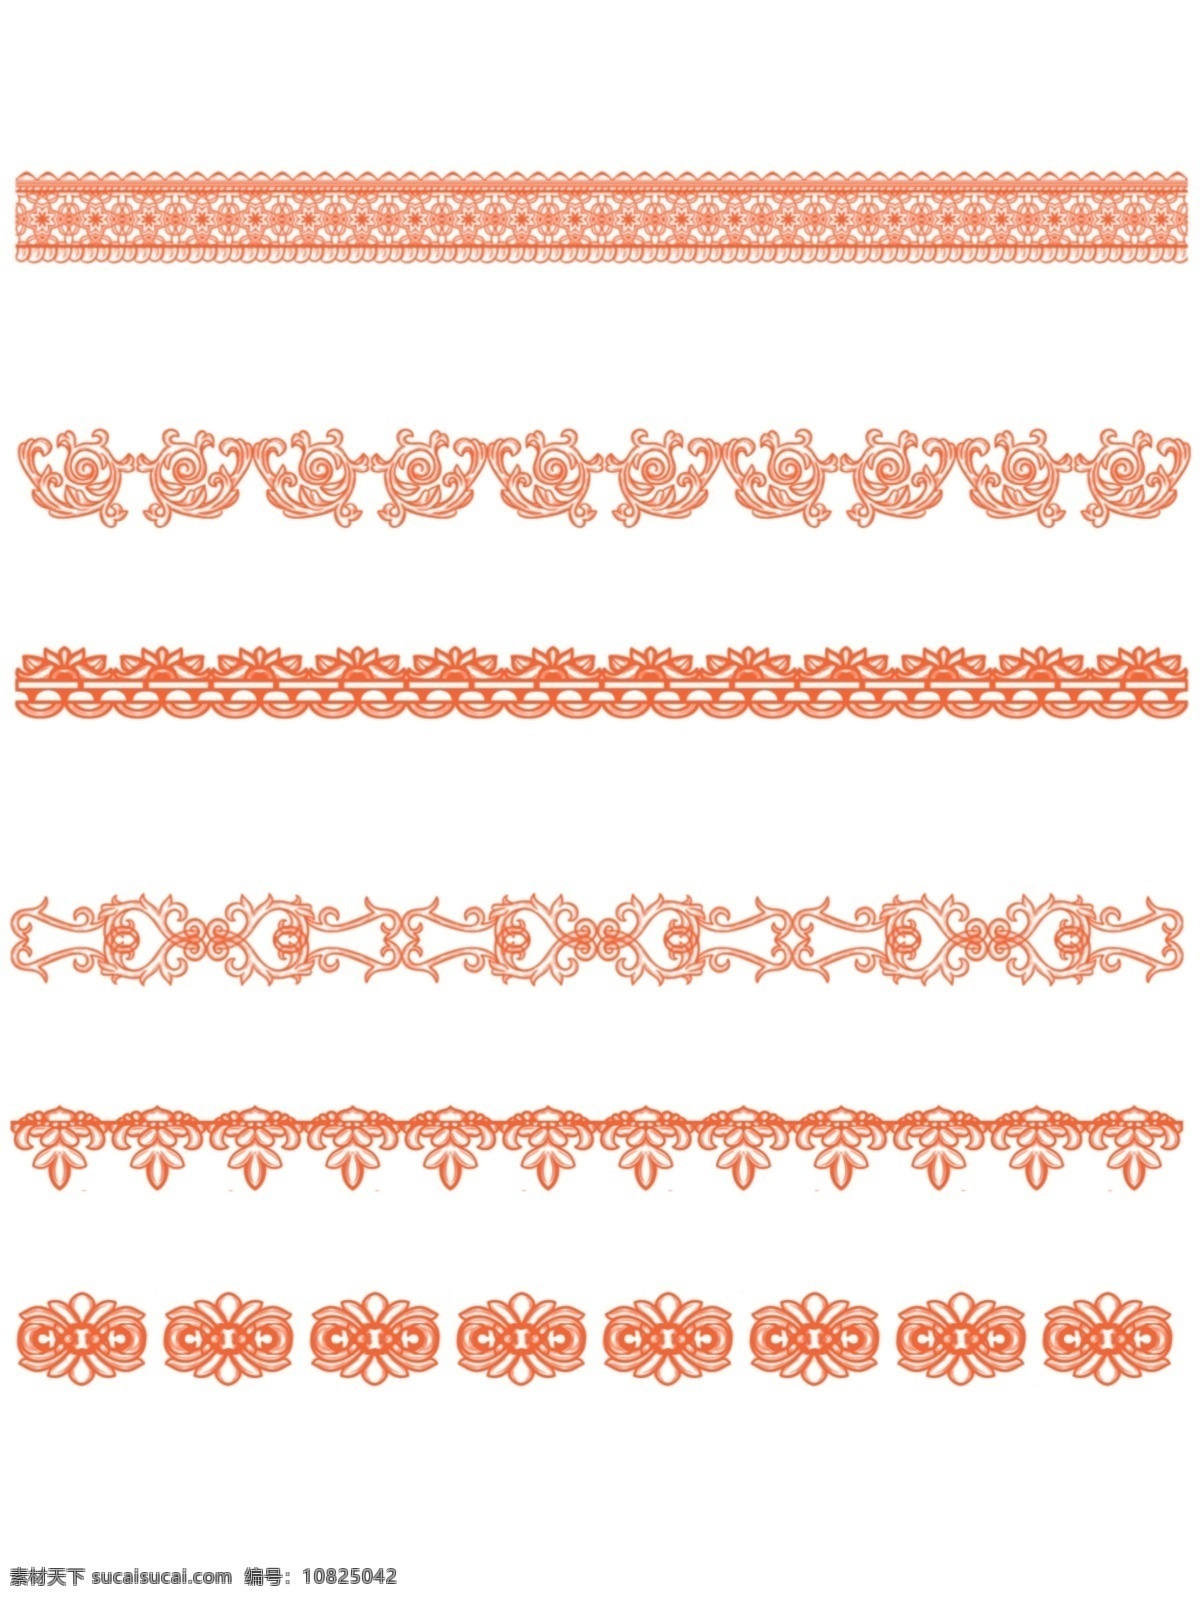 原创 欧式 复杂 边框 套 图 橙色 严肃 商用 元素 花纹 简约